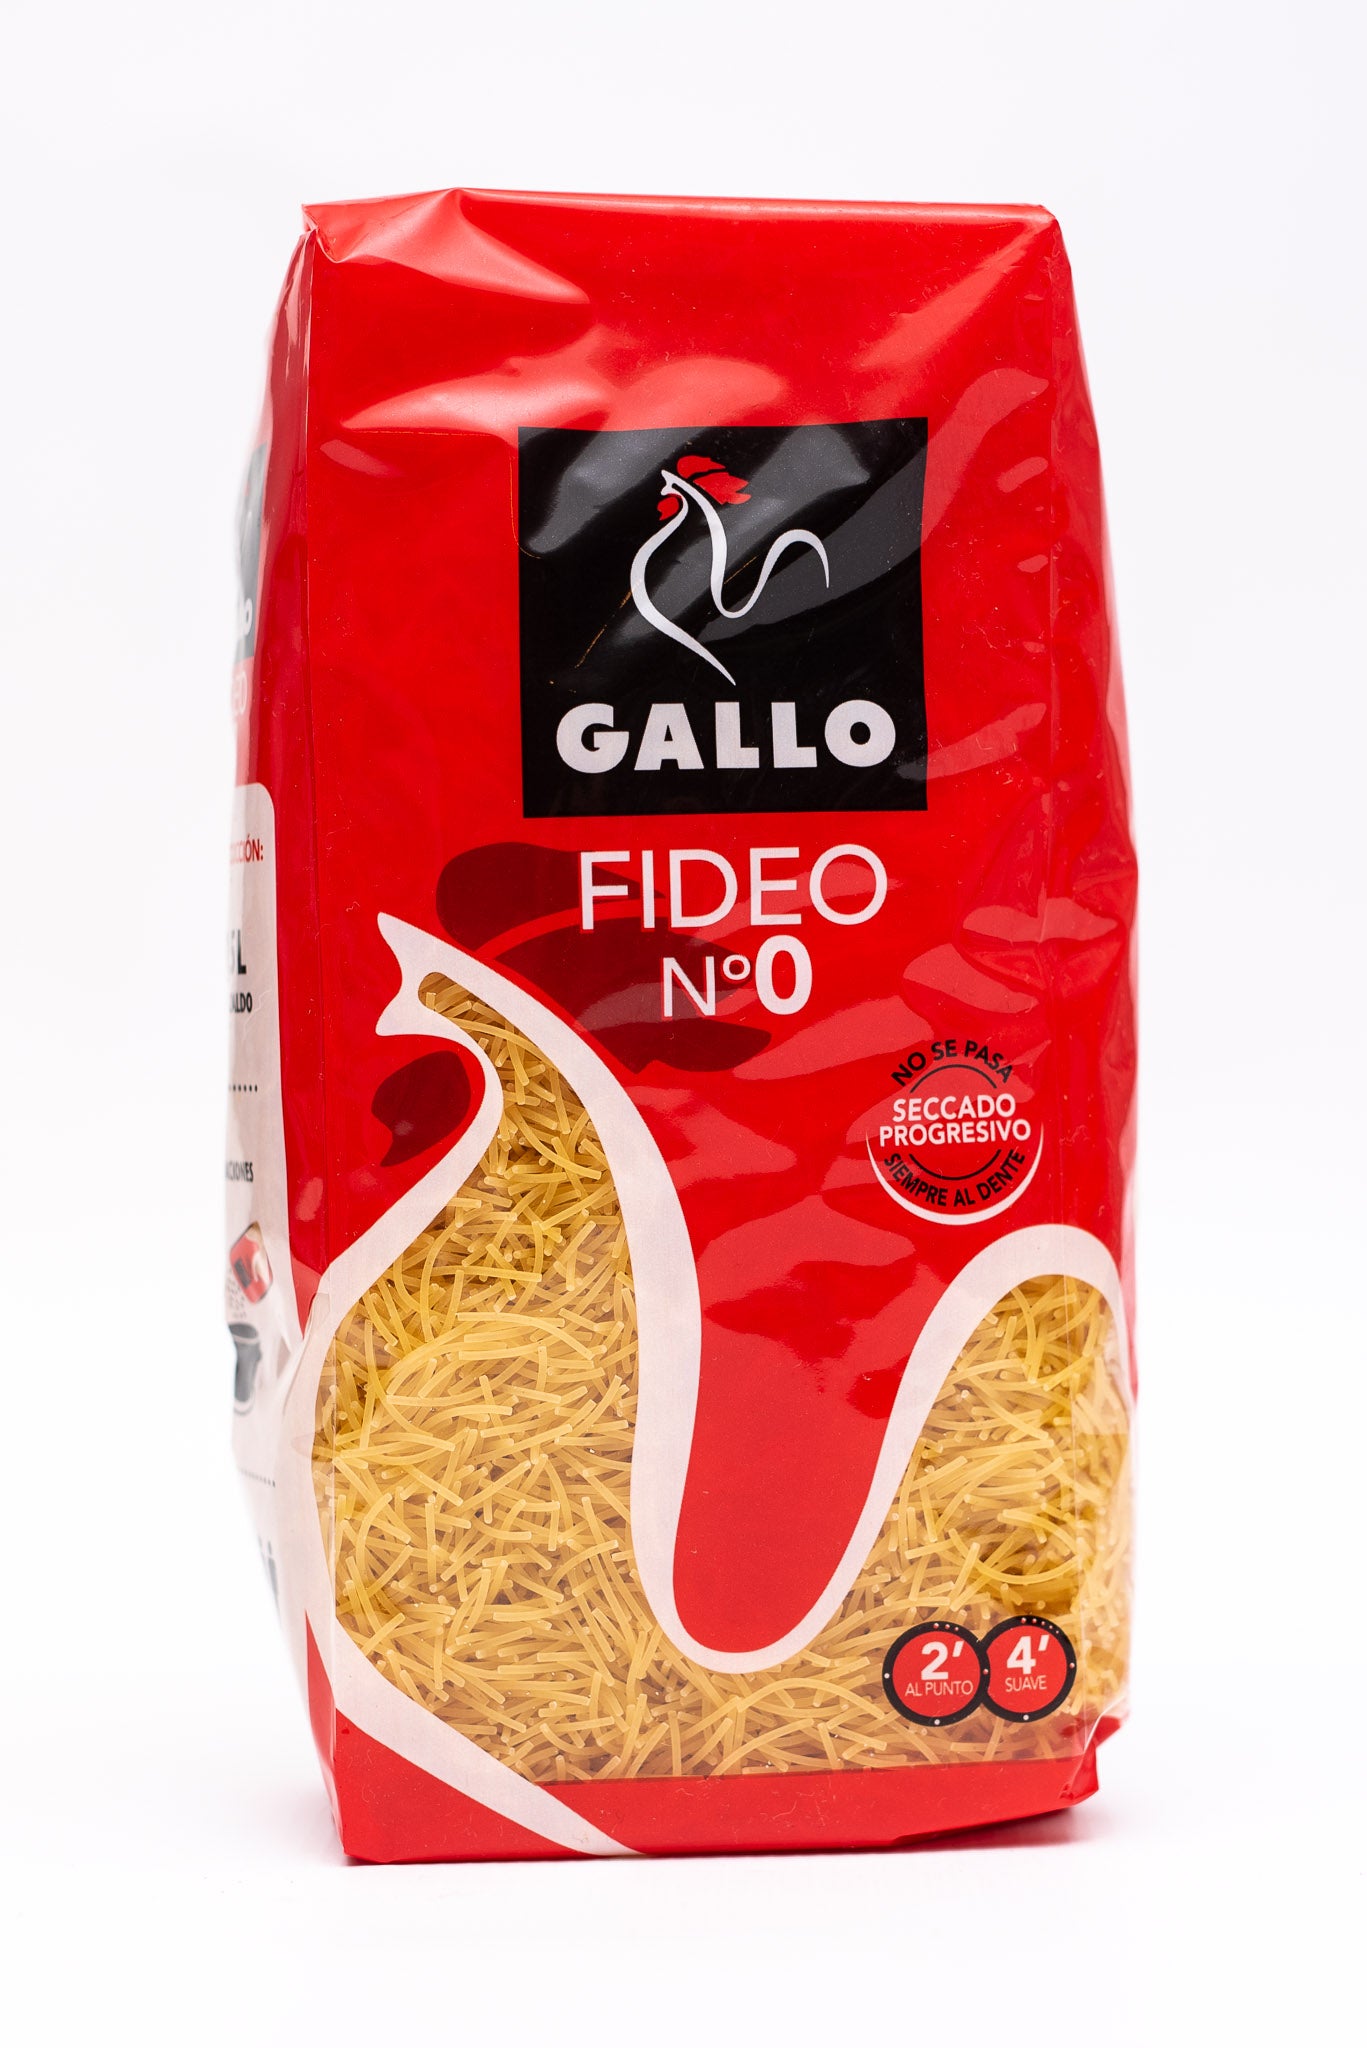 Gallo Fideo No 0 - 450g